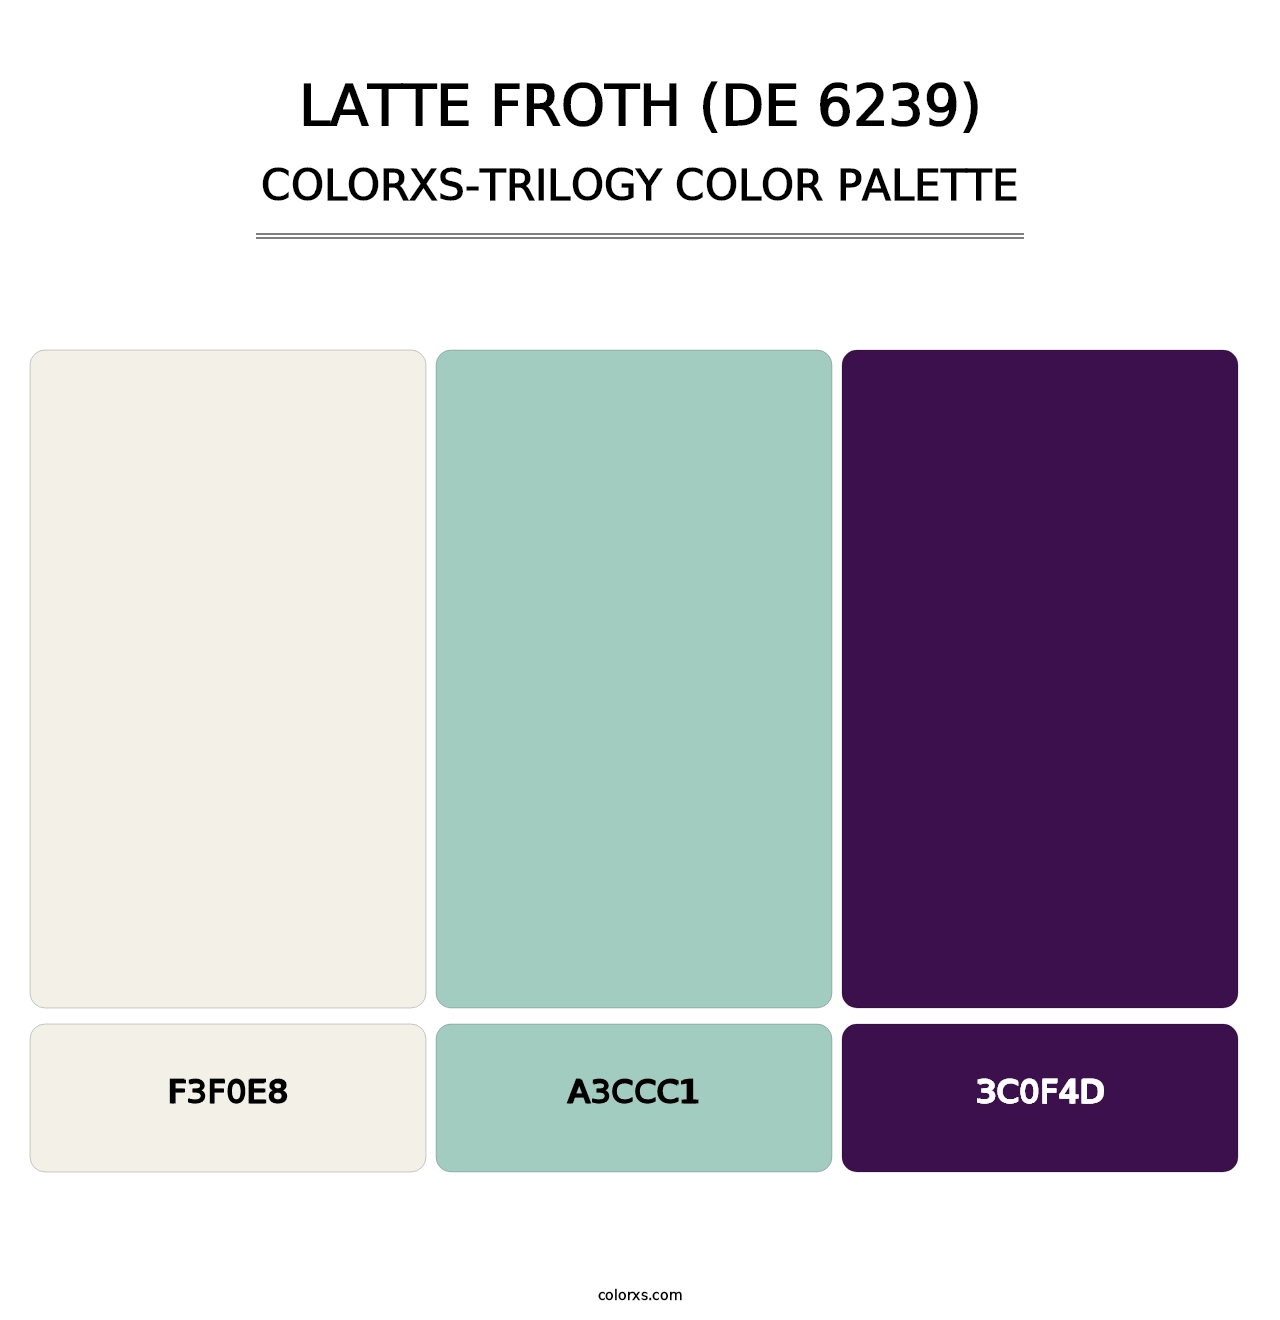 Latte Froth (DE 6239) - Colorxs Trilogy Palette